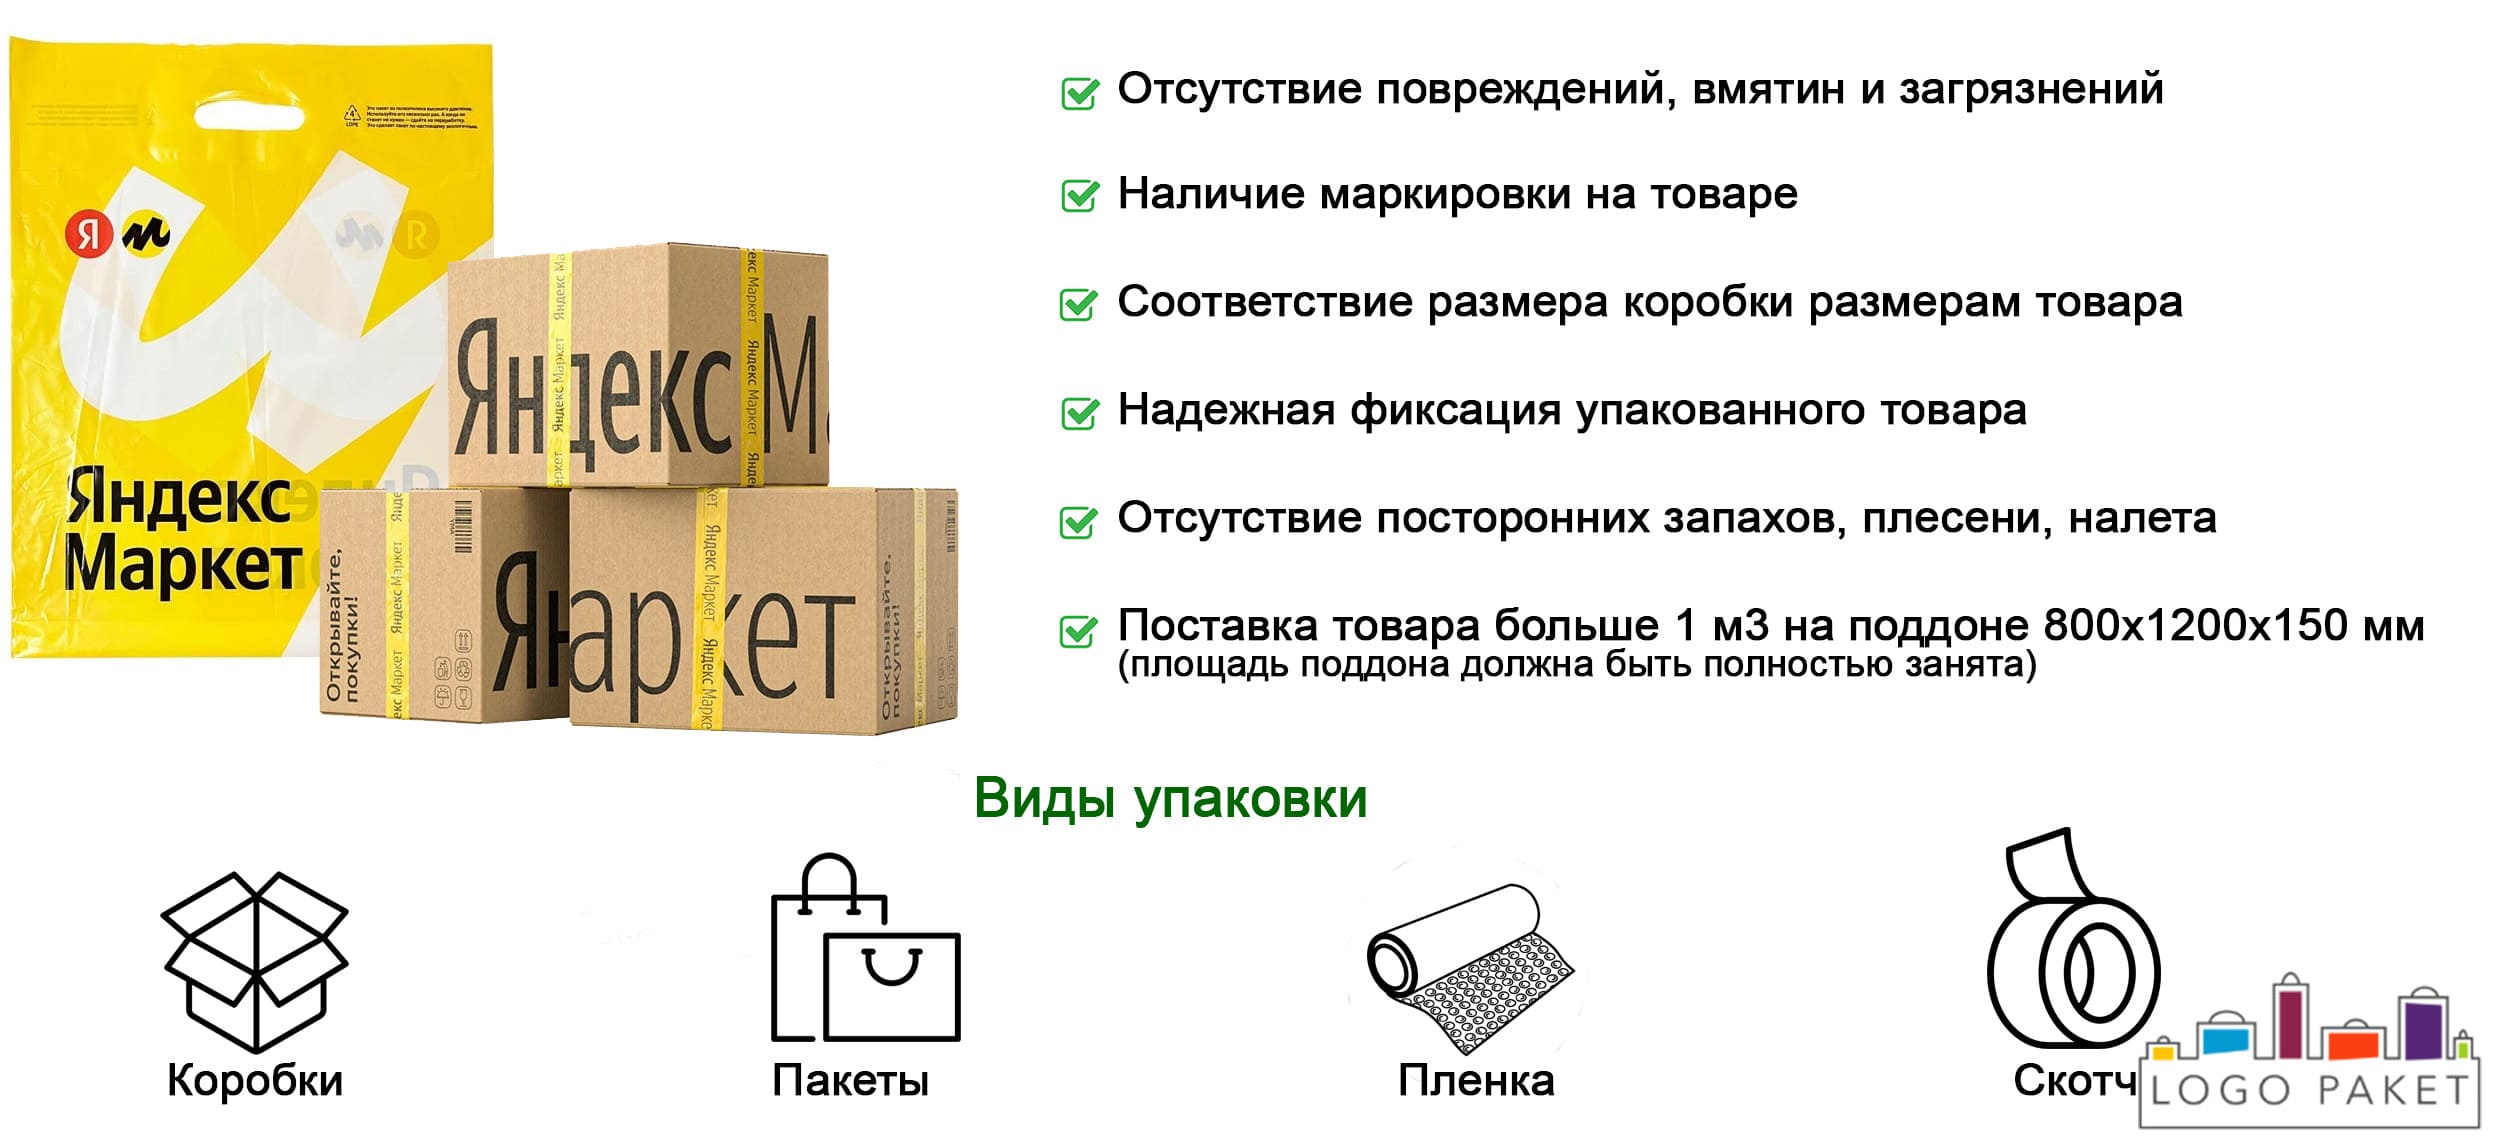 Упаковка для Яндекс Маркет инфографика 